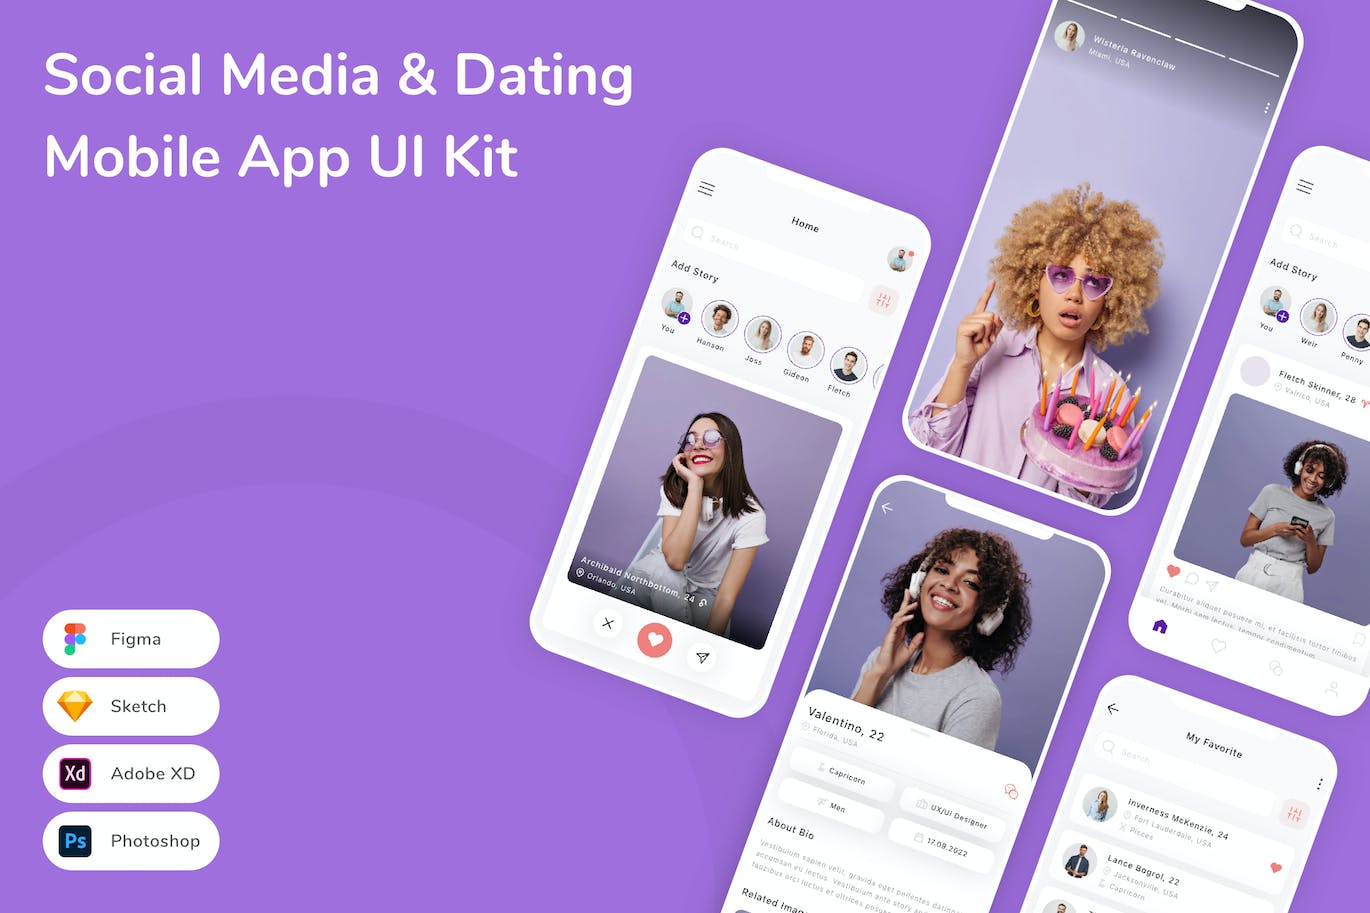 社交媒体&约会App手机应用程序UI设计素材 Social Media & Dating Mobile App UI Kit APP UI 第1张